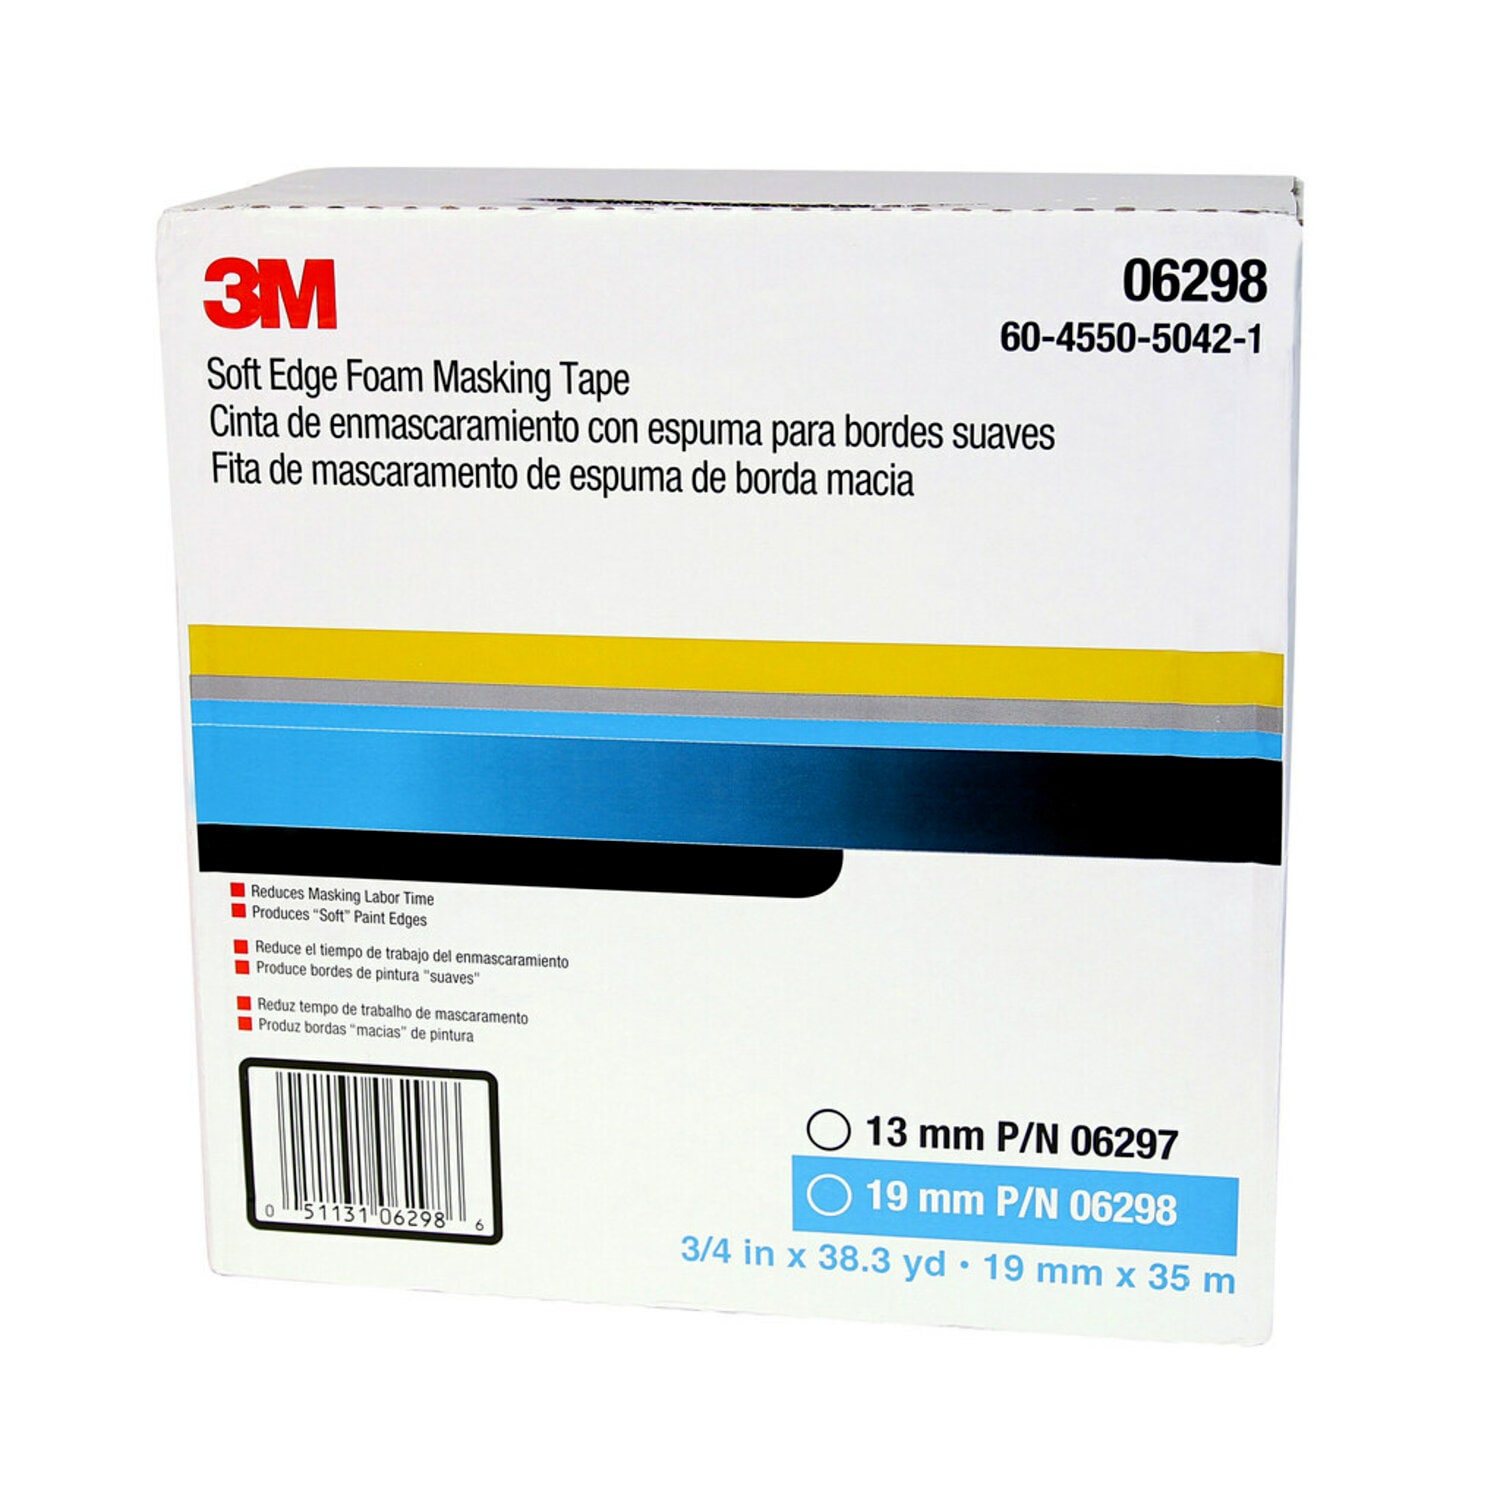 7000000515 - 3M Soft Edge Foam Masking Tape, 06298, 19 mm x 35 m, 1 per case